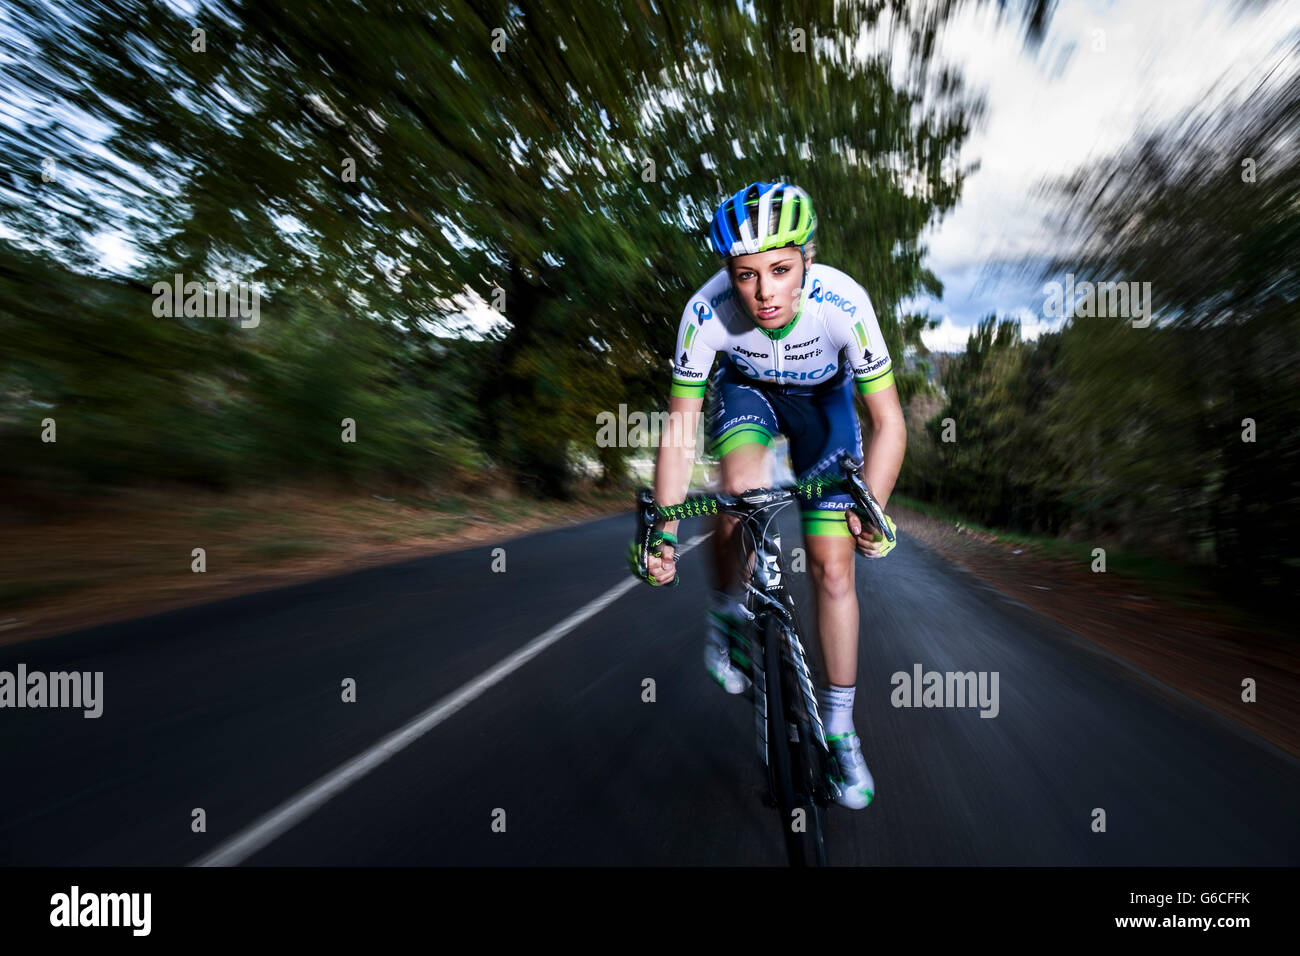 Champion cycliste de Tasmanie Macey Stewart sur un trajet de formation sur les routes de campagne derrière Sheffield près du Mont Roland, Amérique du Nord Ouest de la Tasmanie. Banque D'Images